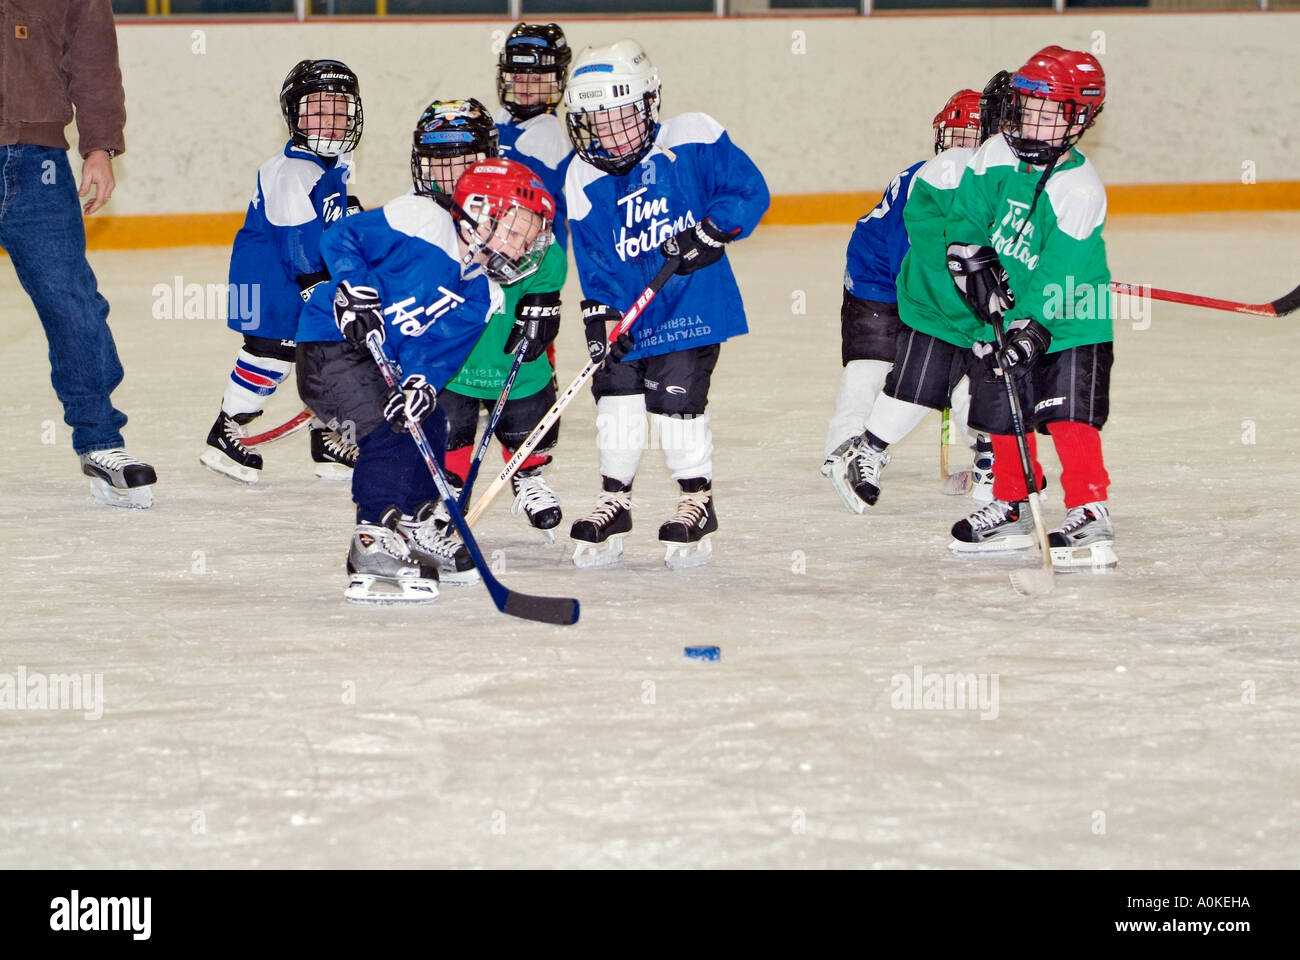 5 Jahre alten Jungen und Mädchen sind die Grundlagen der Eishockey zu spielen lernen. Stockfoto